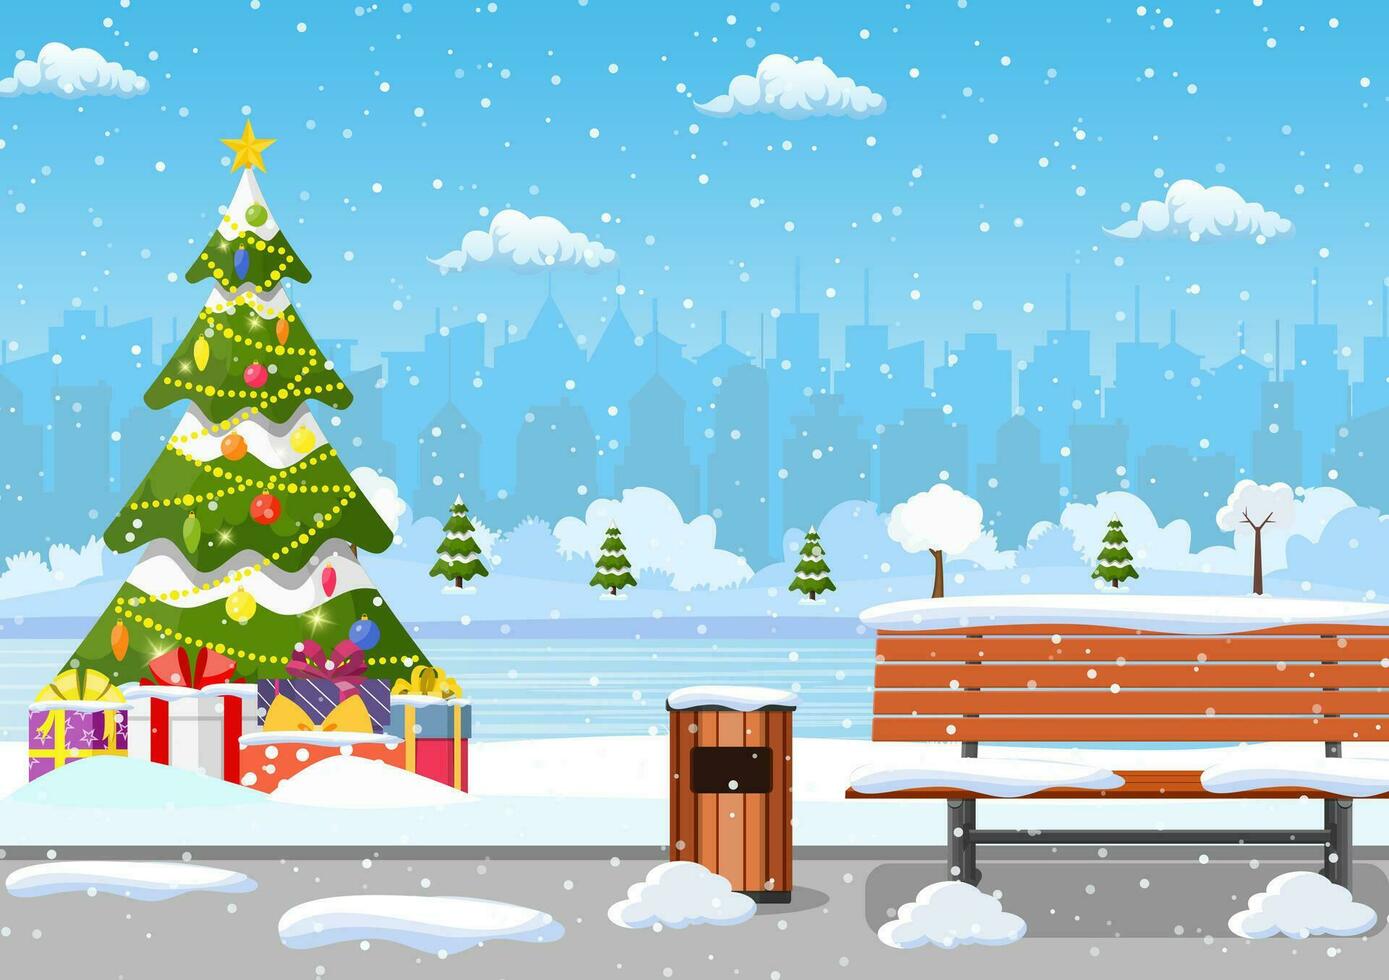 snöig vinter- stad parkera med jul träd, bänk, gångväg och stad horisont. vinter- jul landskap för baner, affisch, webb. vektor illustration i platt stil